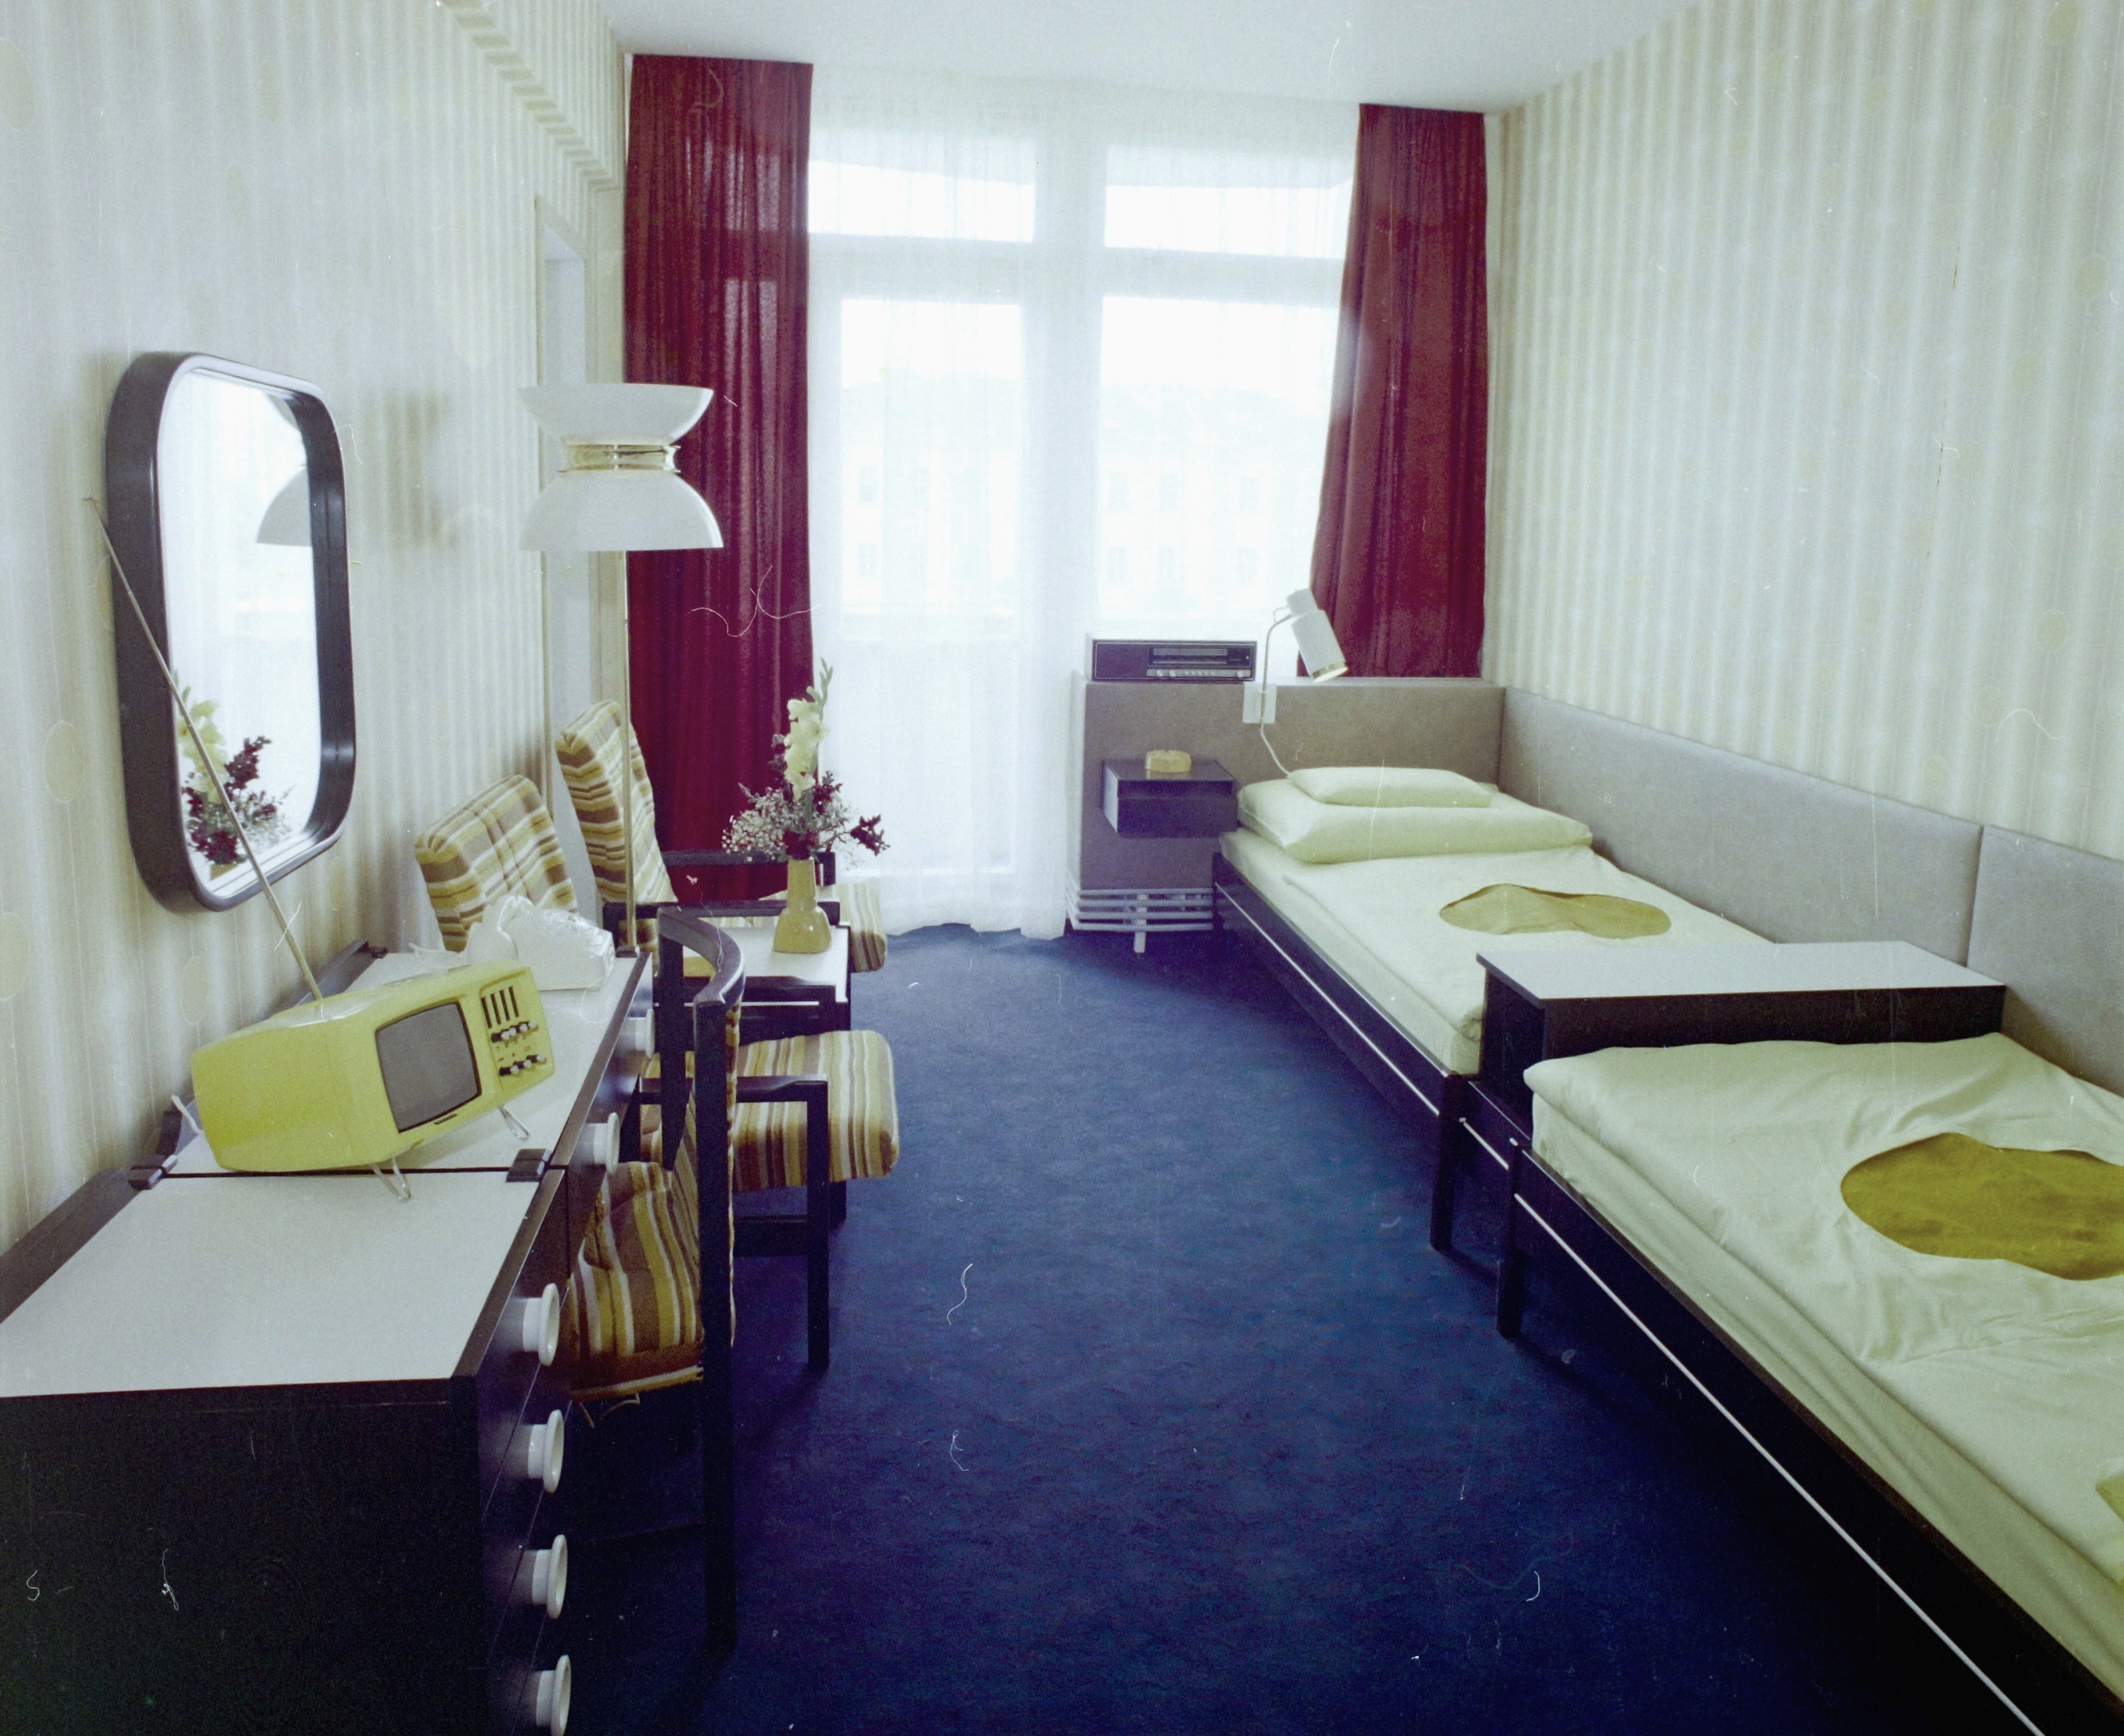 A Hotel Pannónia egyik lakosztályának hálószobája és szobája, 1976. Forrás: Fortepan / Bauer Sándor